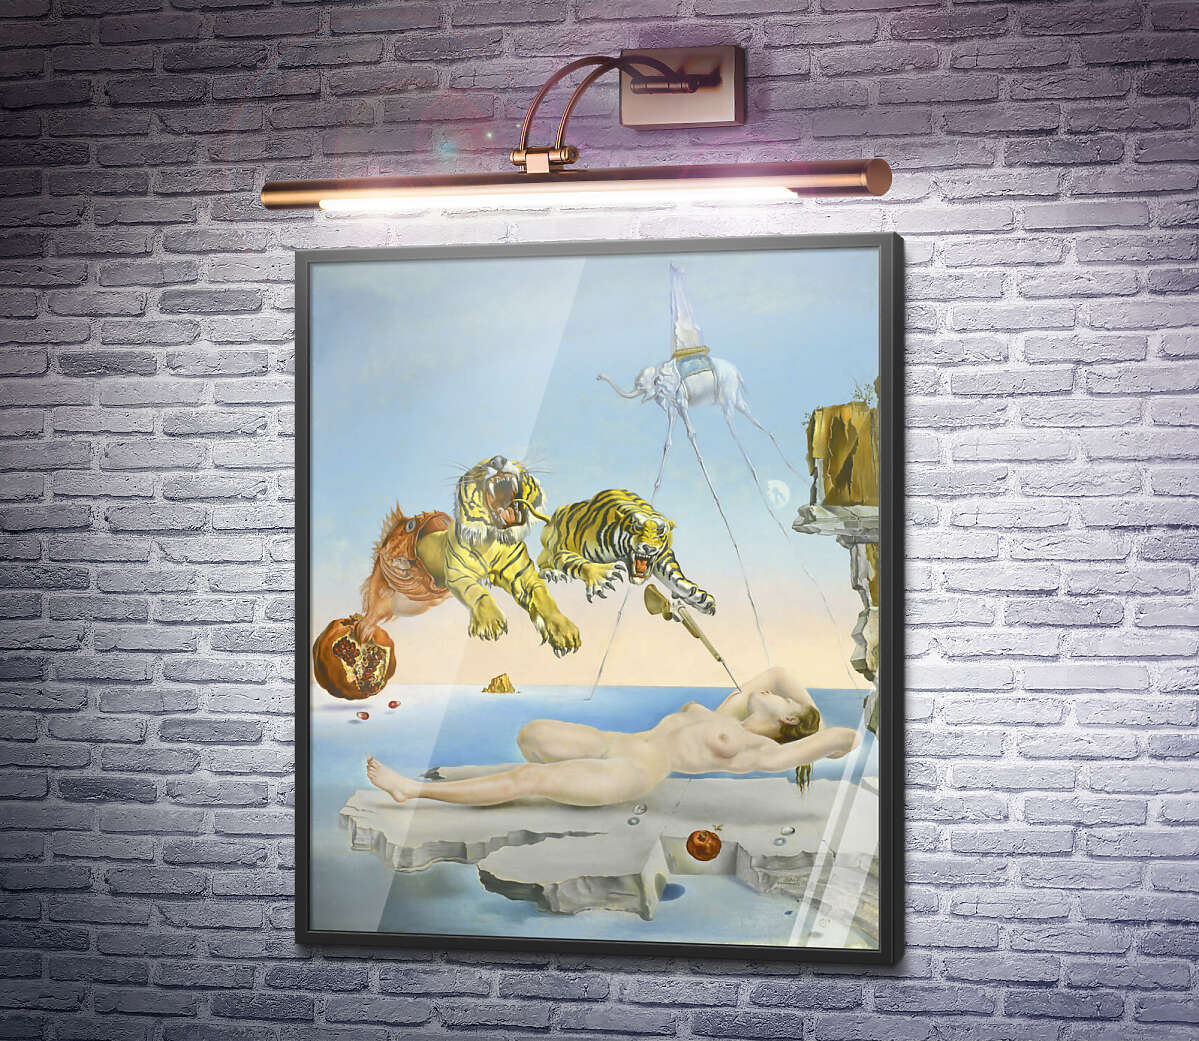 Постер Сон, викликаний польотом бджоли навколо граната за секунду до пробудження Сальвадор Далі